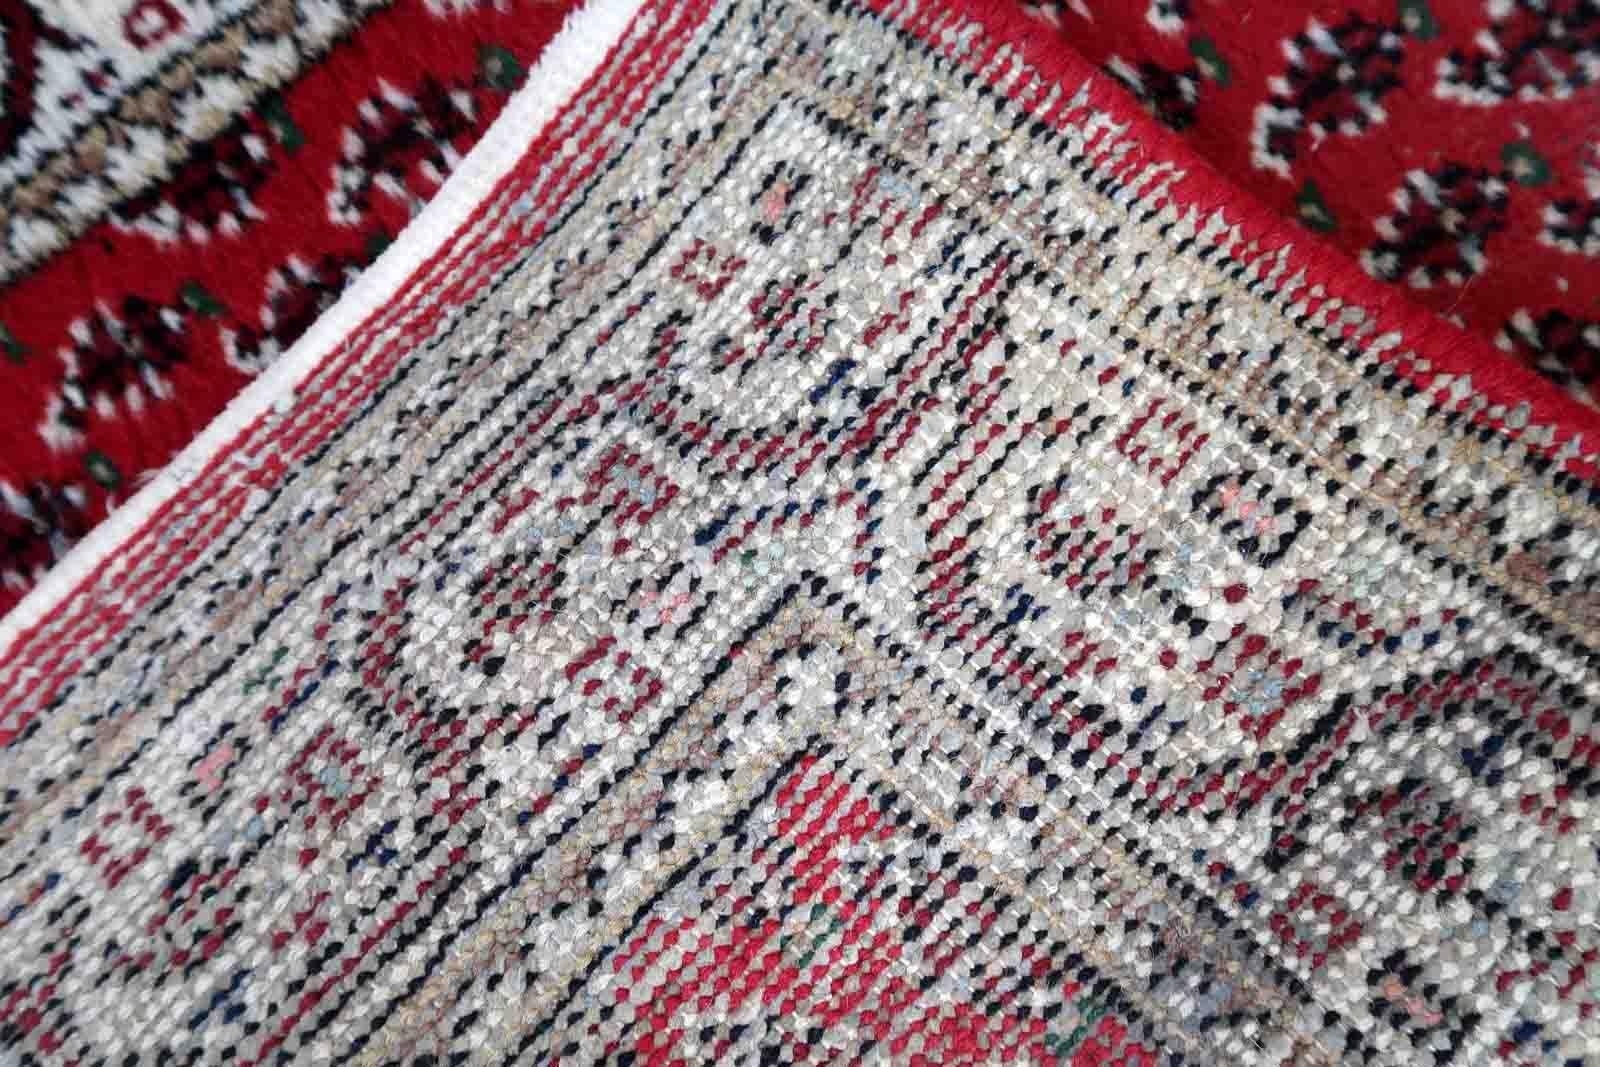 Tapis indien vintage Seraband fait à la main, de couleur rouge et avec un motif sur toute la surface. Ce tapis a été fabriqué à la fin du 20e siècle. Il est en état d'origine, a quelques poils bas.

-état : original, un peu de pile basse,

-vers